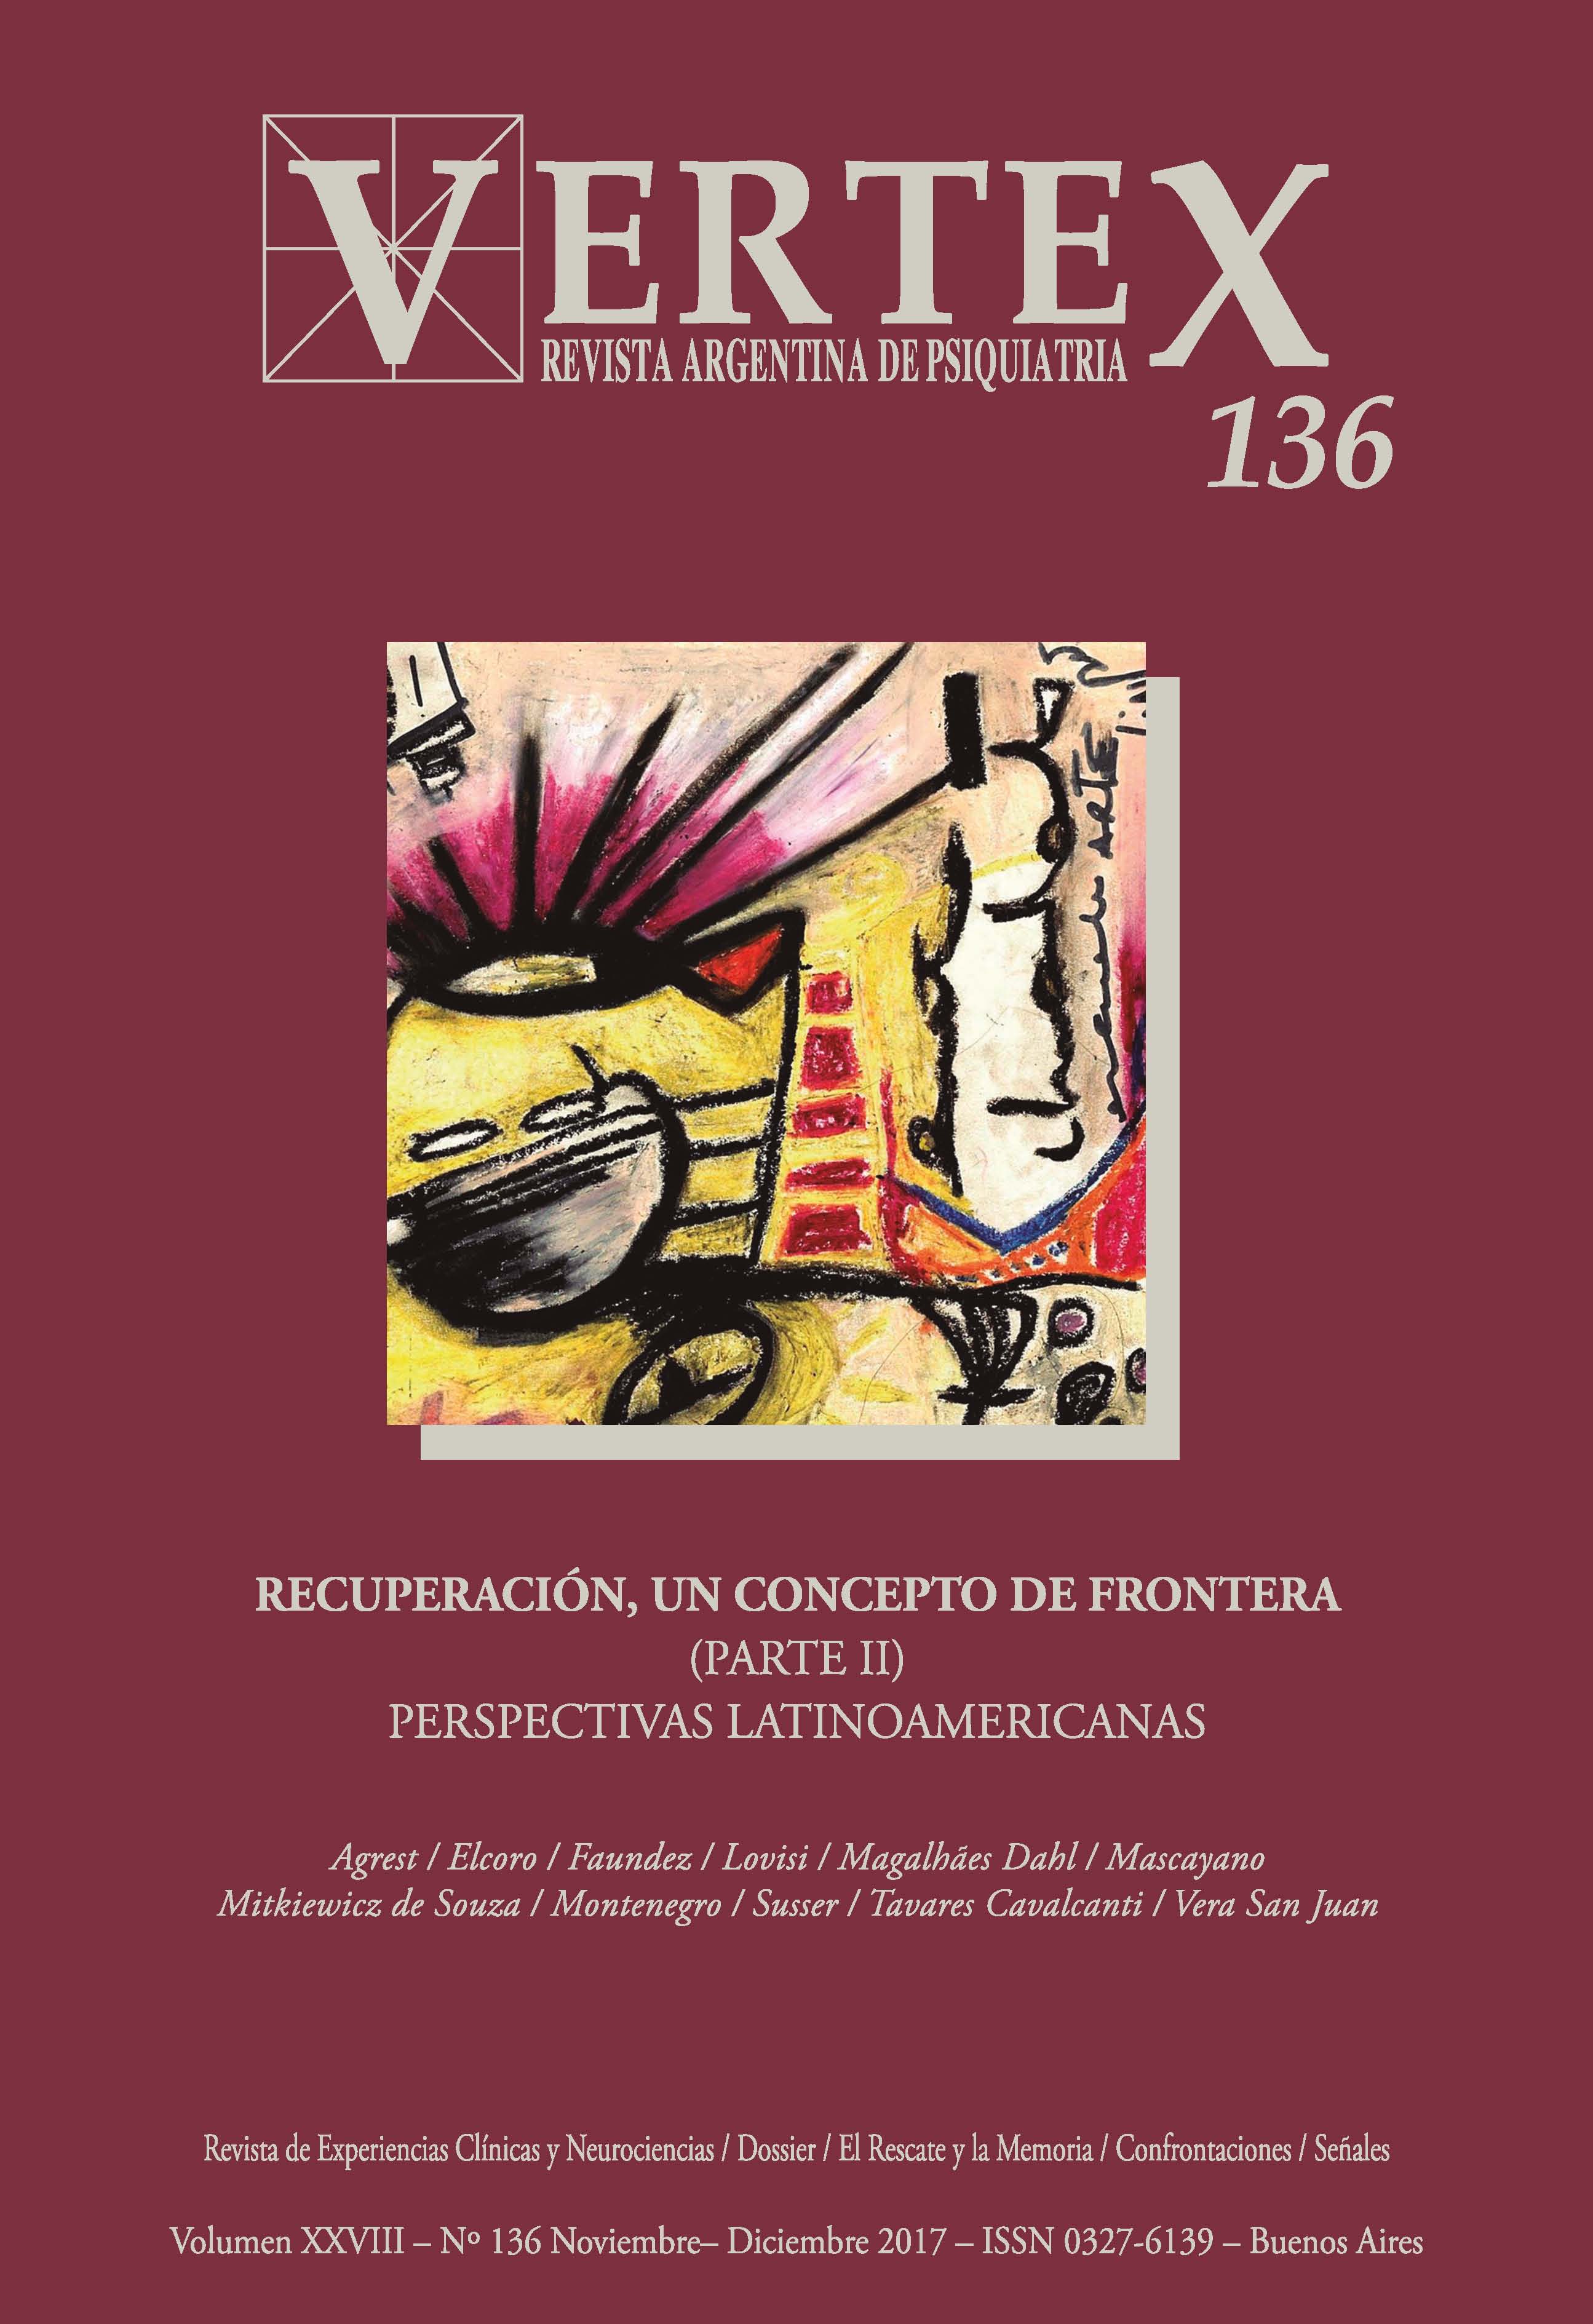 					Afficher Vol. 28 No 136, nov.-dic. (2017): Recuperación, un concepto de frontera, parte 2. Perspectivas latinoamericanas
				